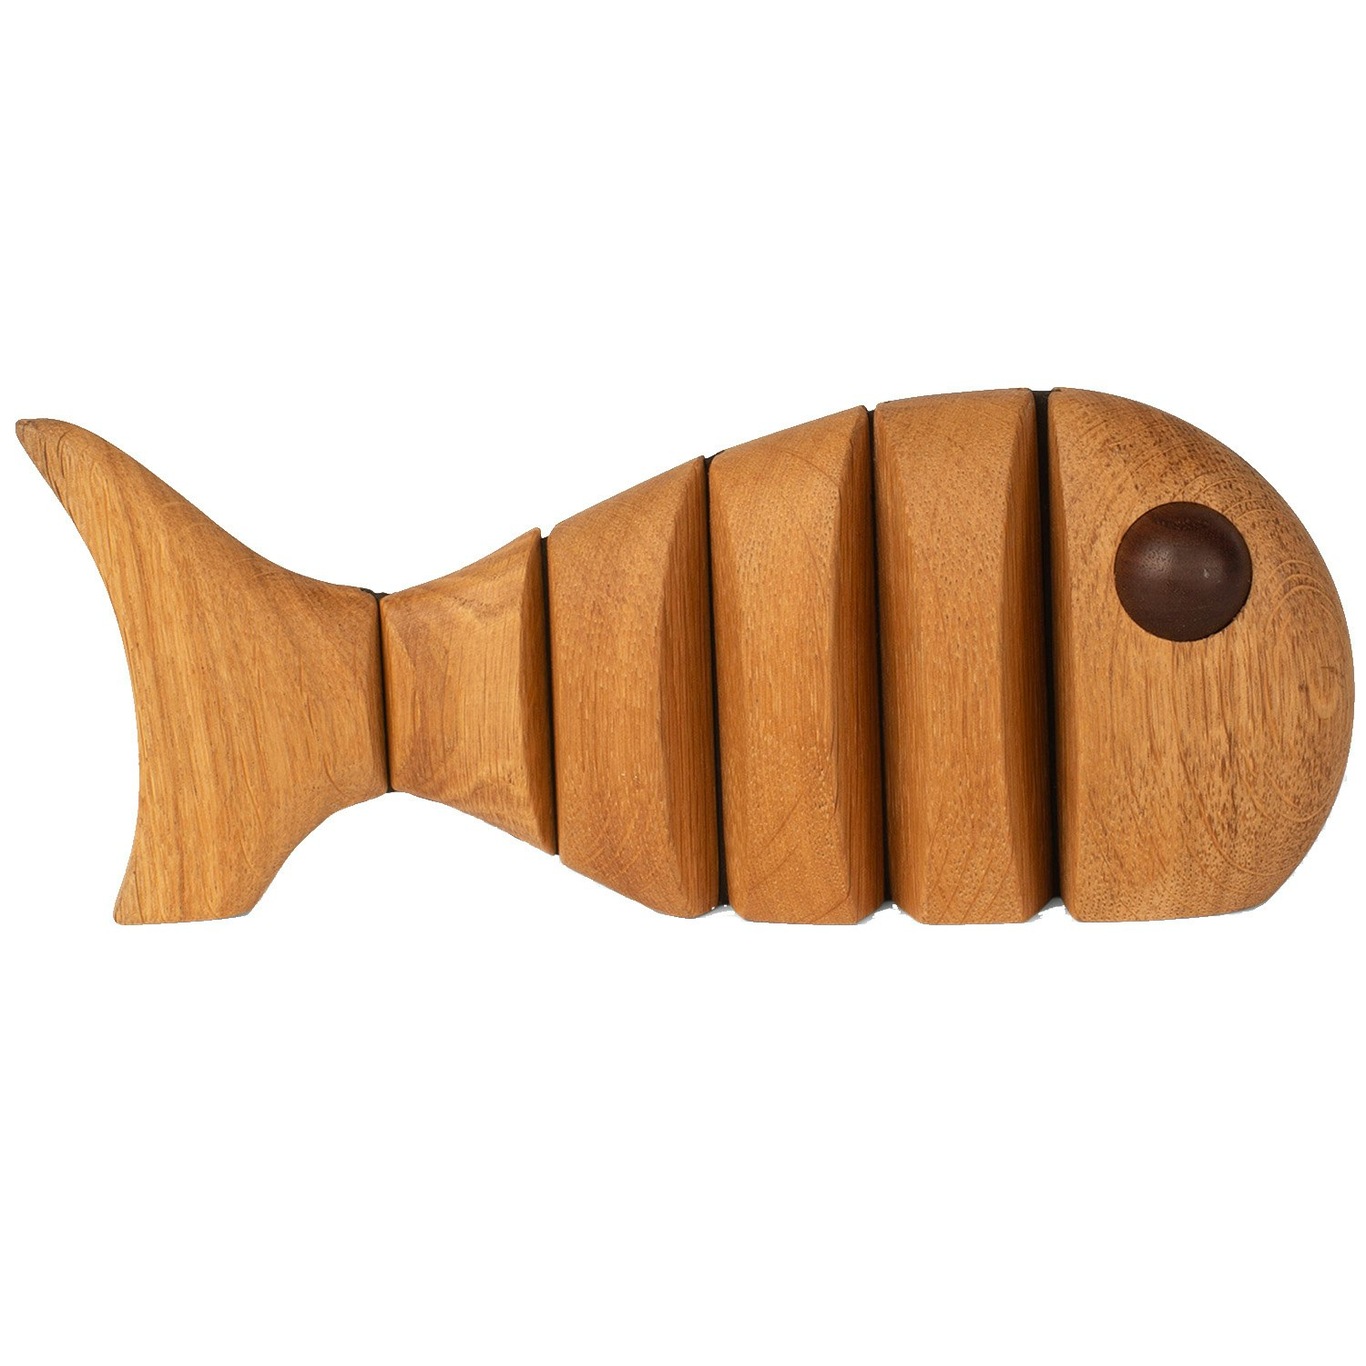 The Wood Fish Houten Beeldje 18 cm